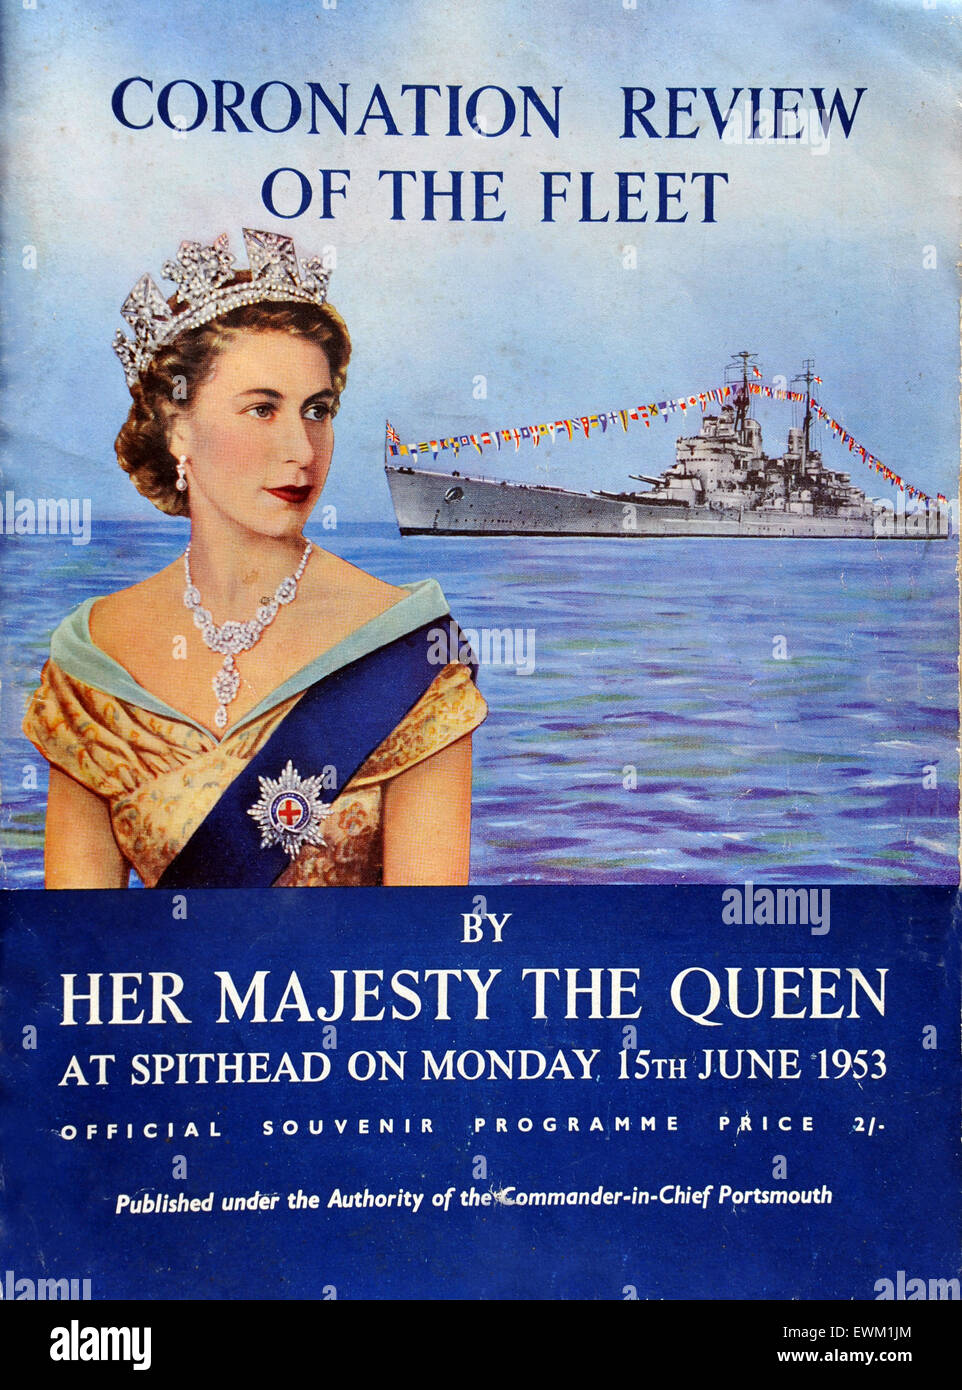 Incoronazione flotta navale programma di riesame a Spithead vicino a Portsmouth per la Regina Elisabetta II a partire dal 1953. La Gran Bretagna. Foto Stock